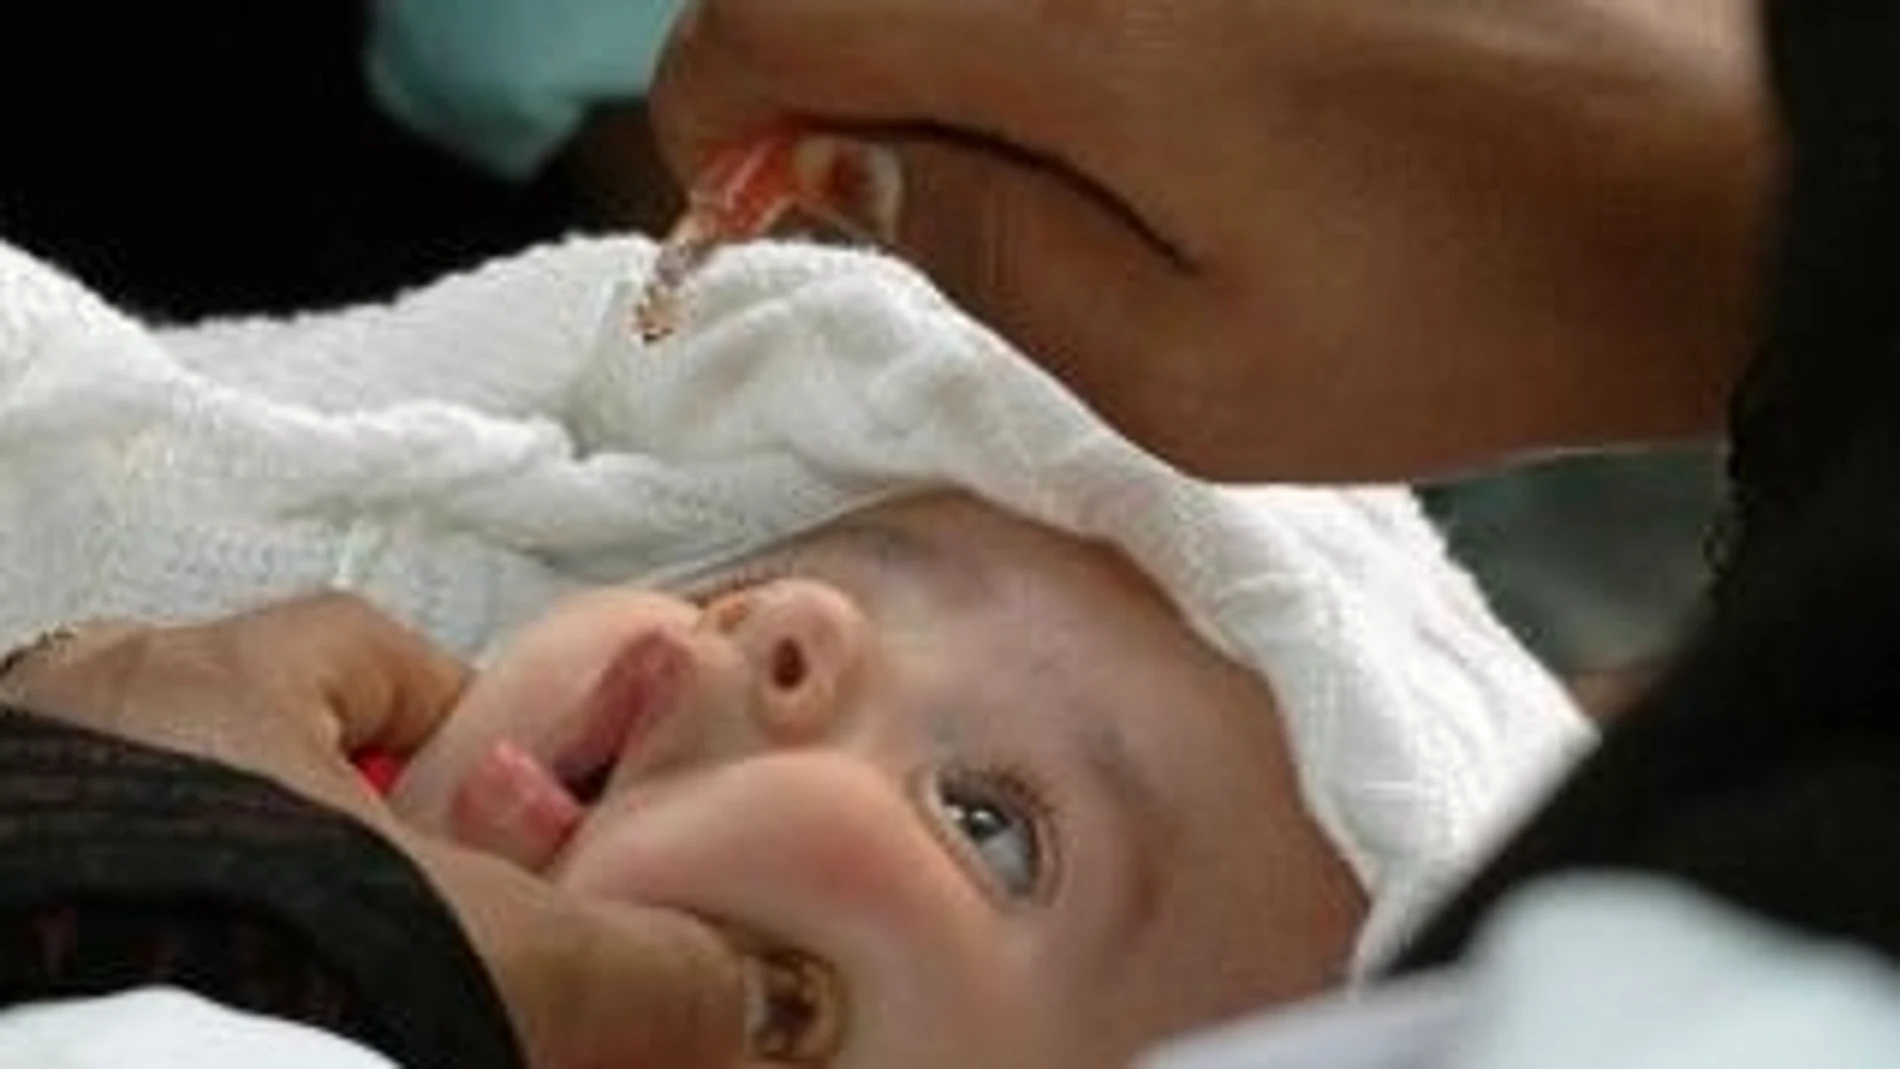 Sanidad constata un descenso en la vacunación, principalmente en aquellas consideradas prioritarias, como en bebés hasta 15 meses